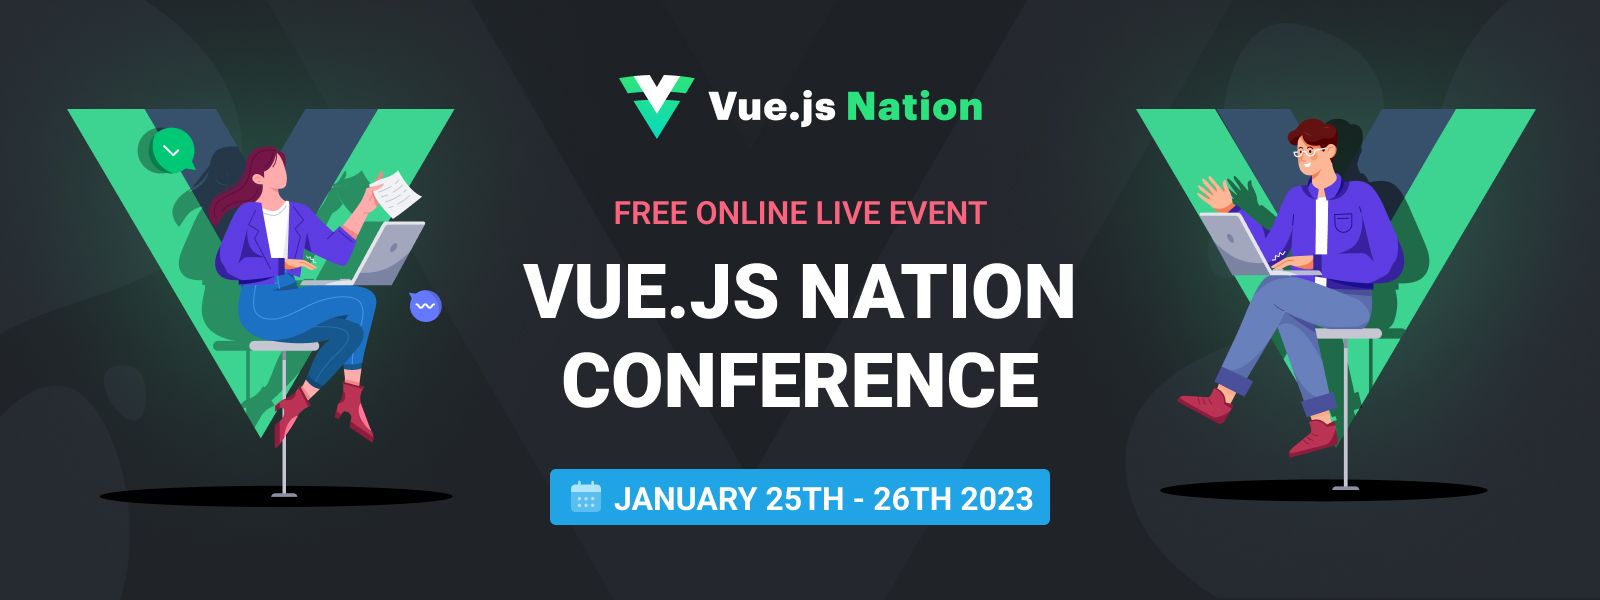 Vue.js Nation banner image